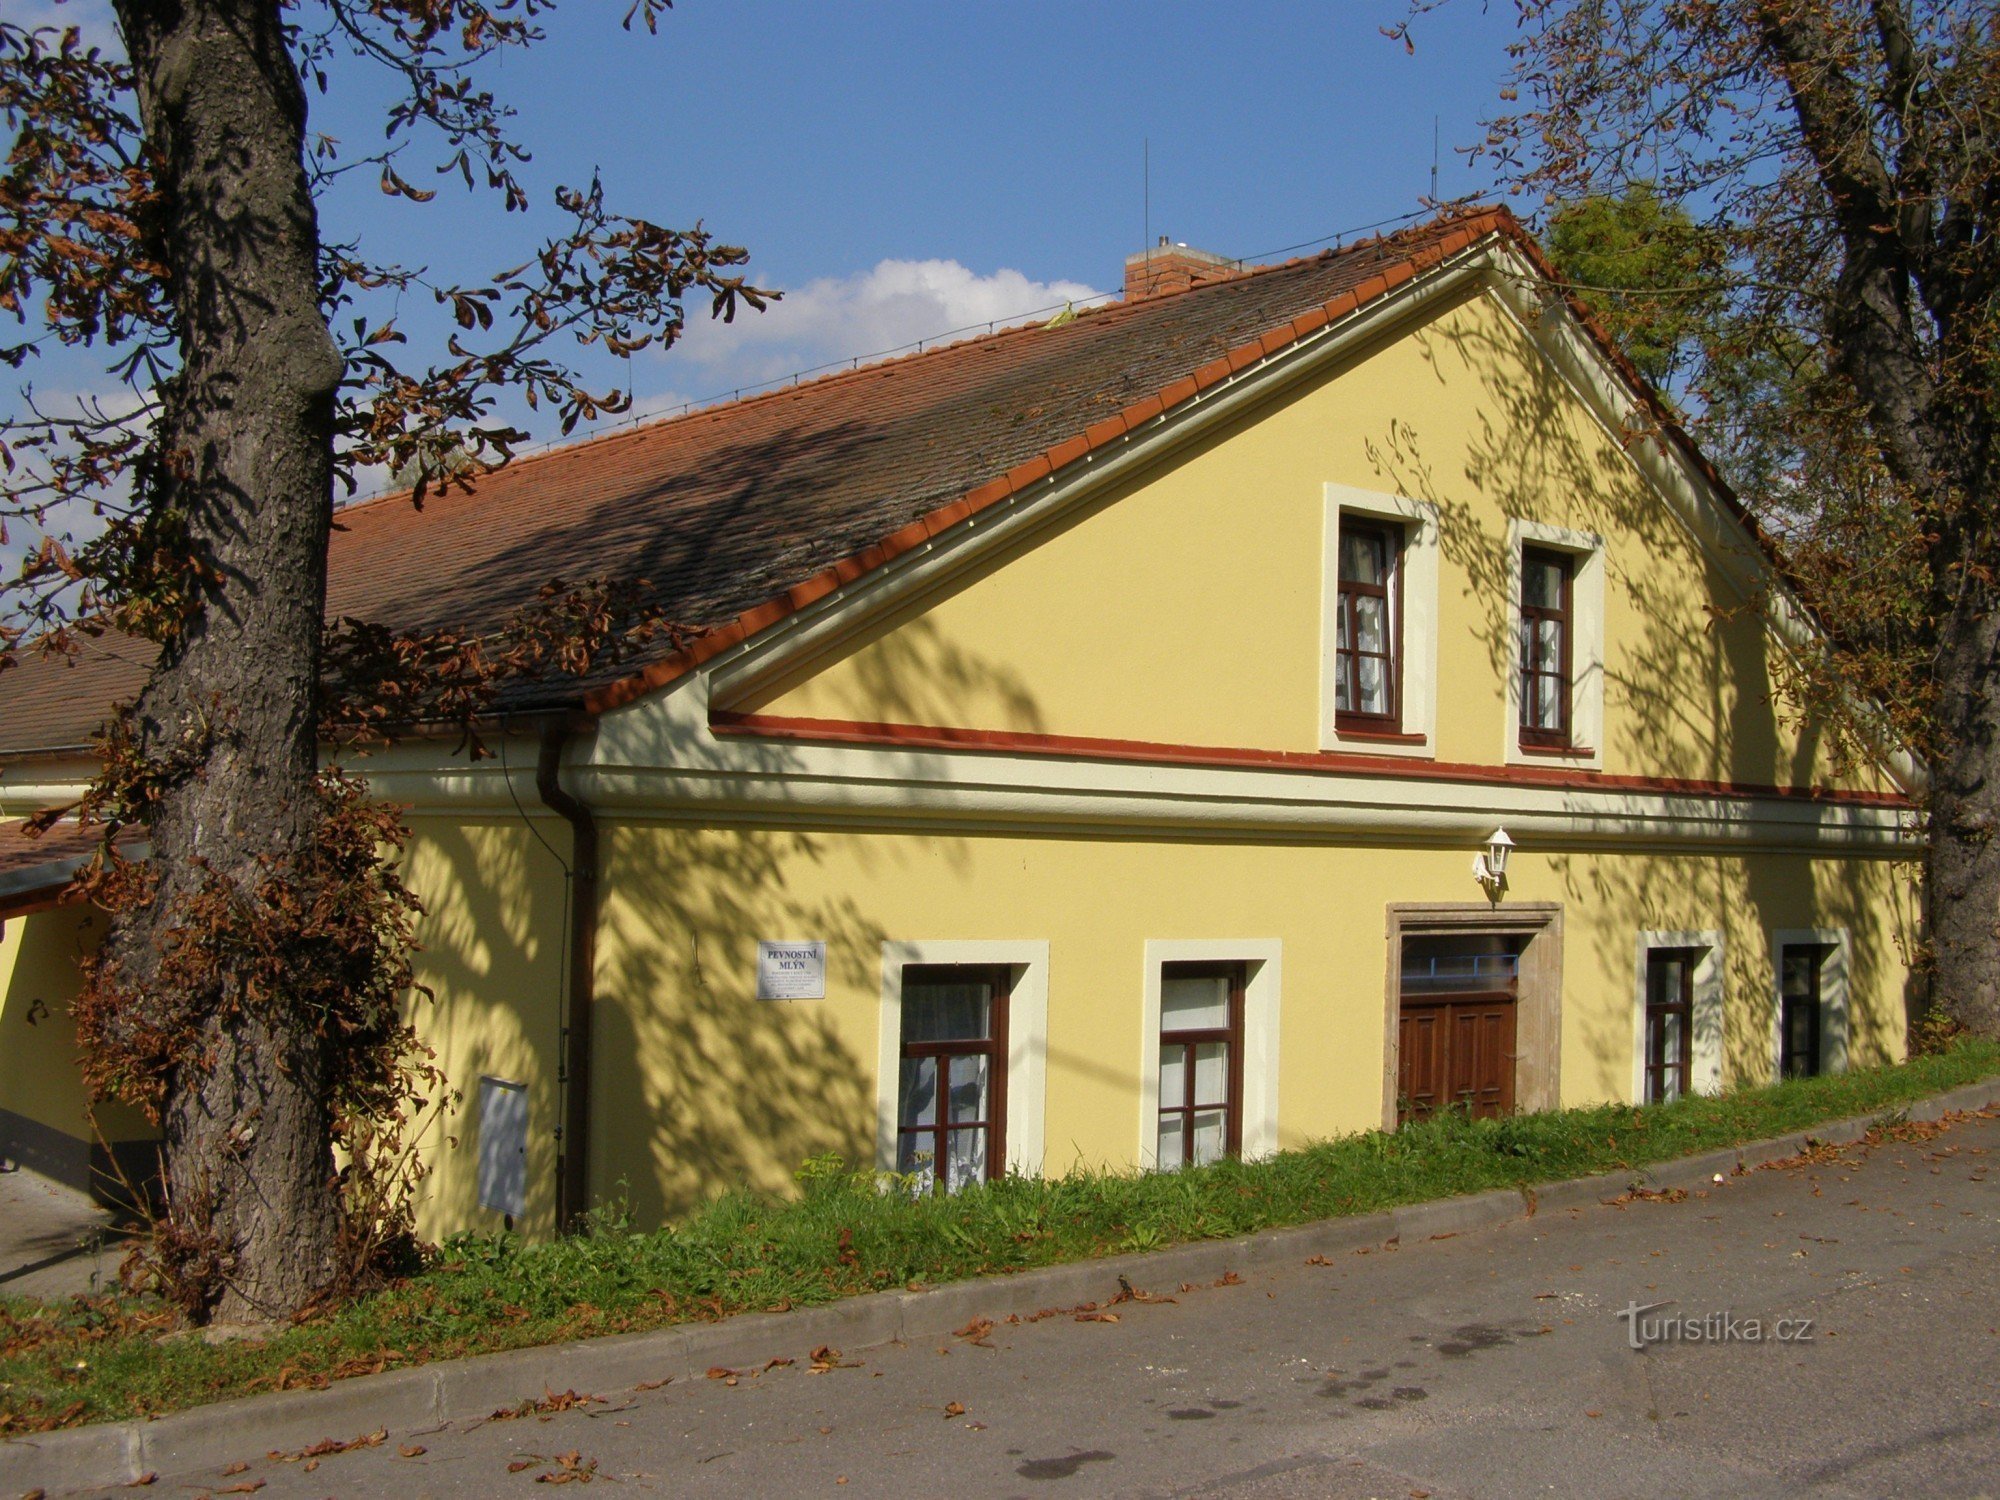 Josefov - fortress mill